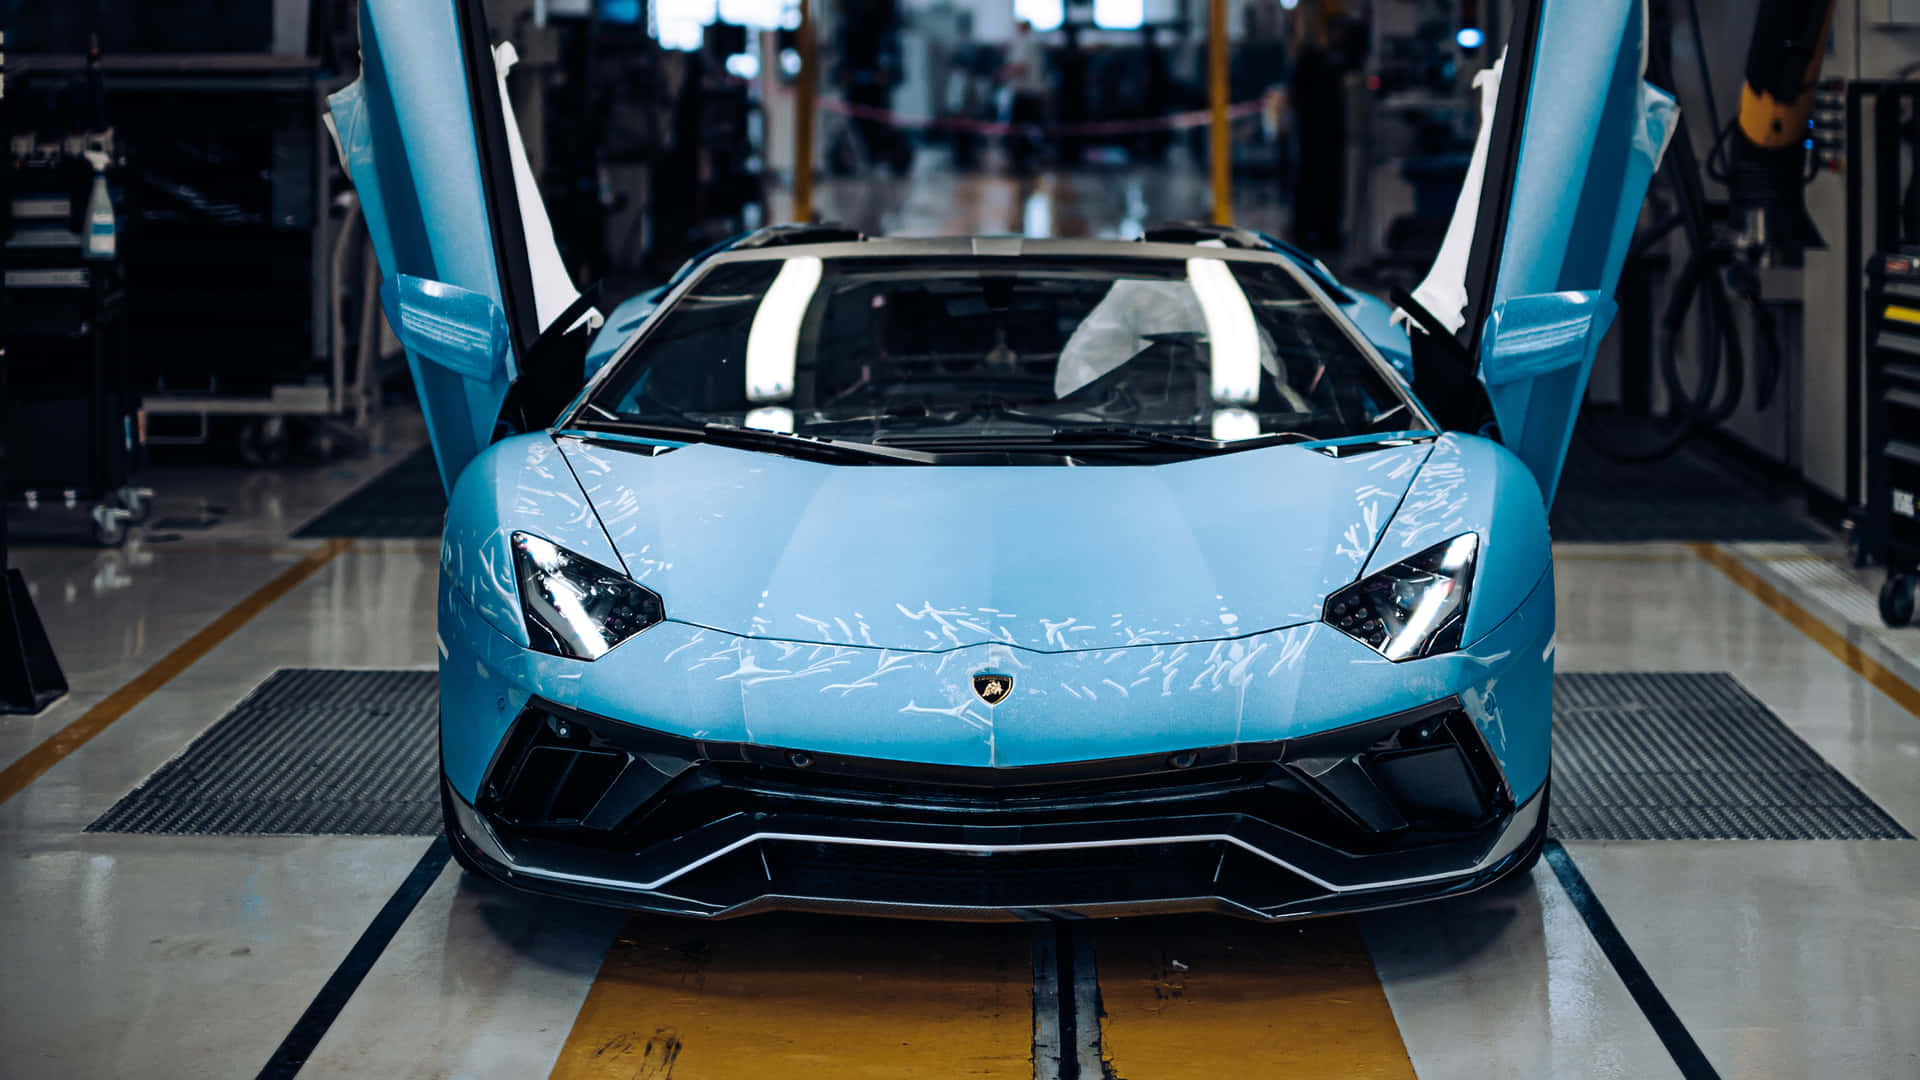 Enblå Lamborghini Sportsbil Står I En Fabrik.